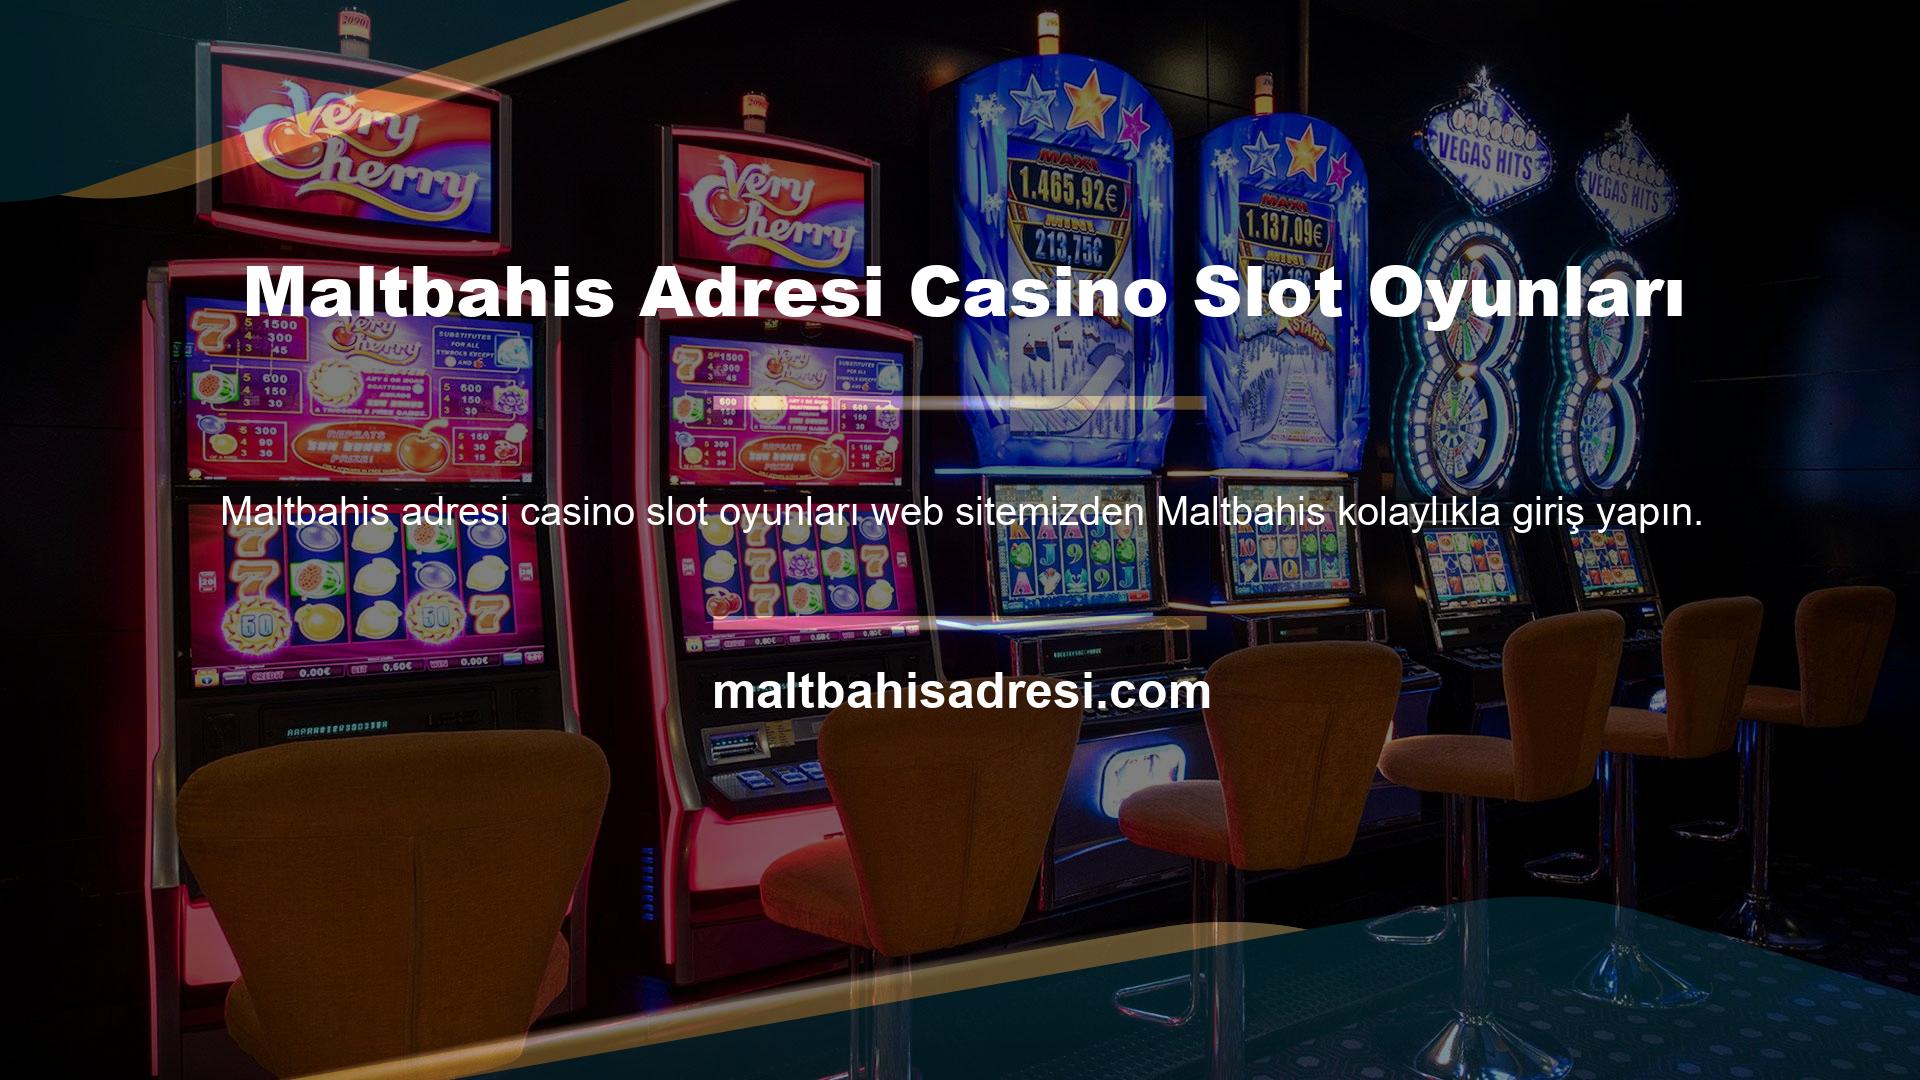 Maltbahis adresi casino slot oyunları sitesi, güncel adresler, kampanyalar, yeni özellikler ve promosyonlar hakkında bilgi sahibi olmanın bir yolunu sunuyor